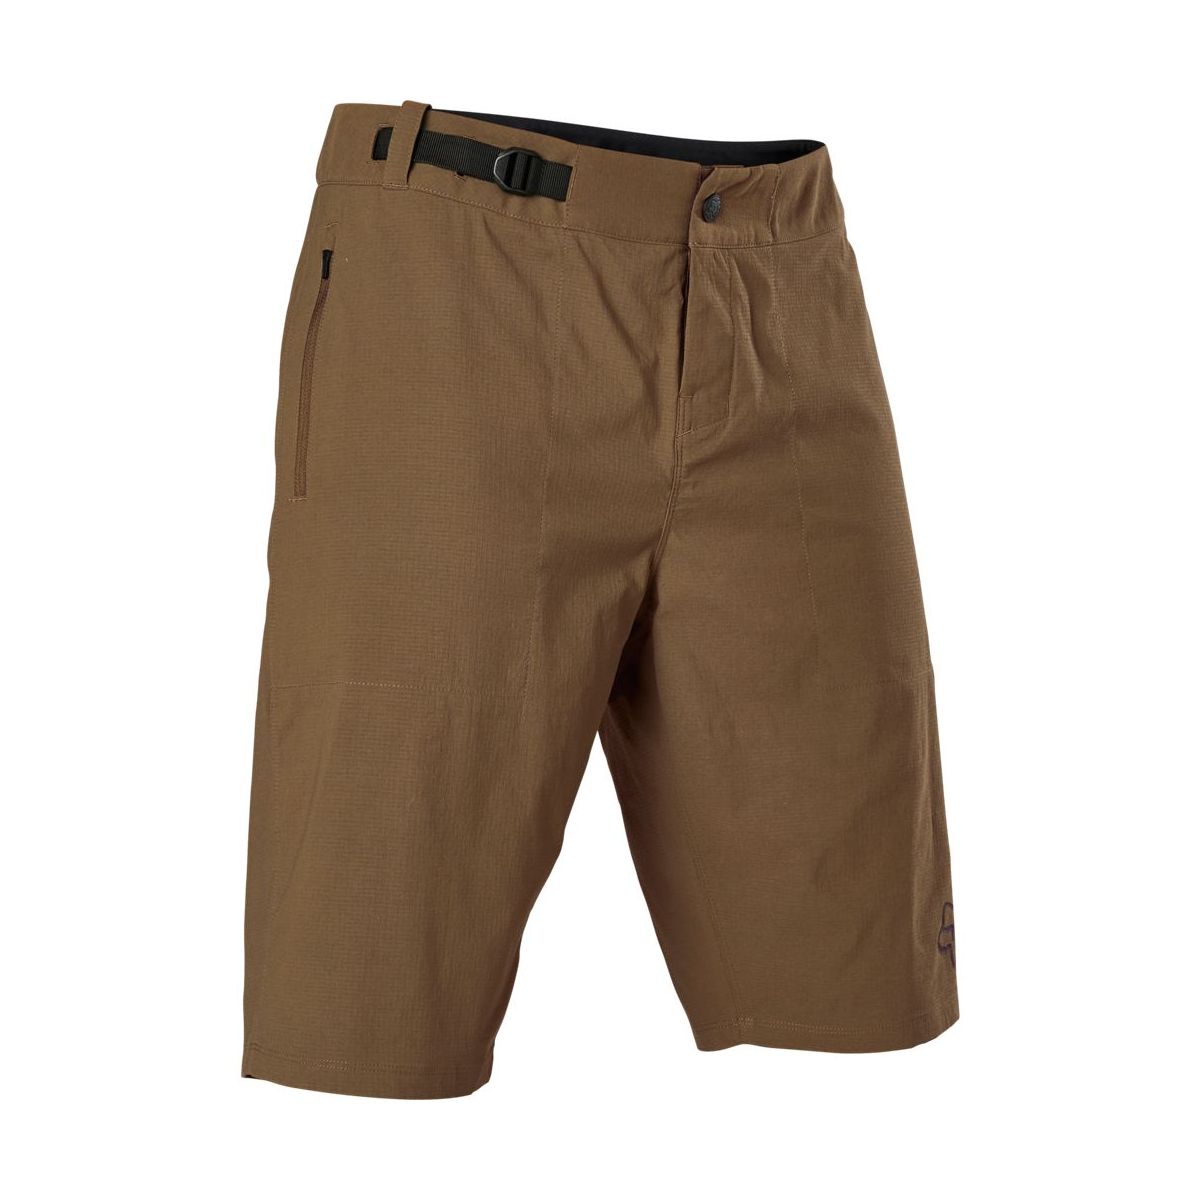 Pantalón corto Enduro MTB Fox Ranger con badana color marrón